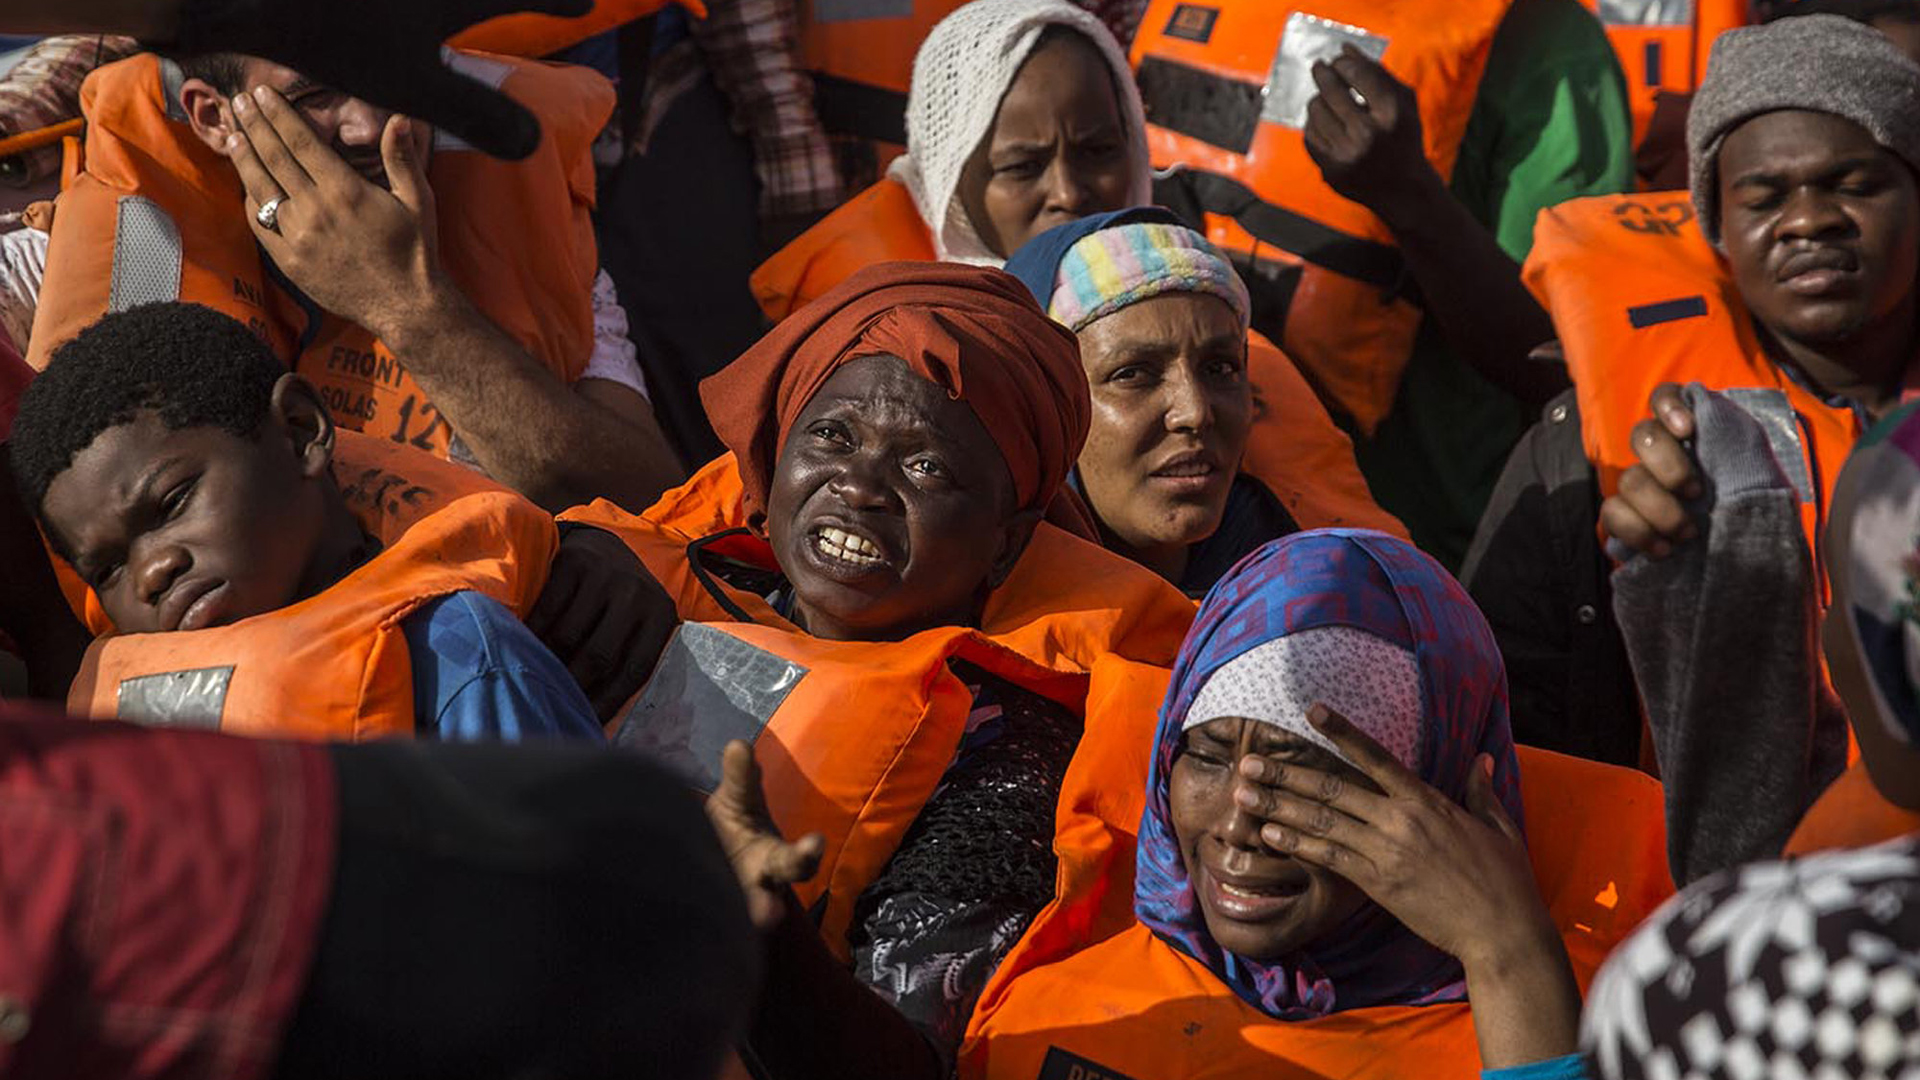 Von der spanischen "Open Arms" aus dem Mittelmeer gerettete Flüchtlinge | dpa